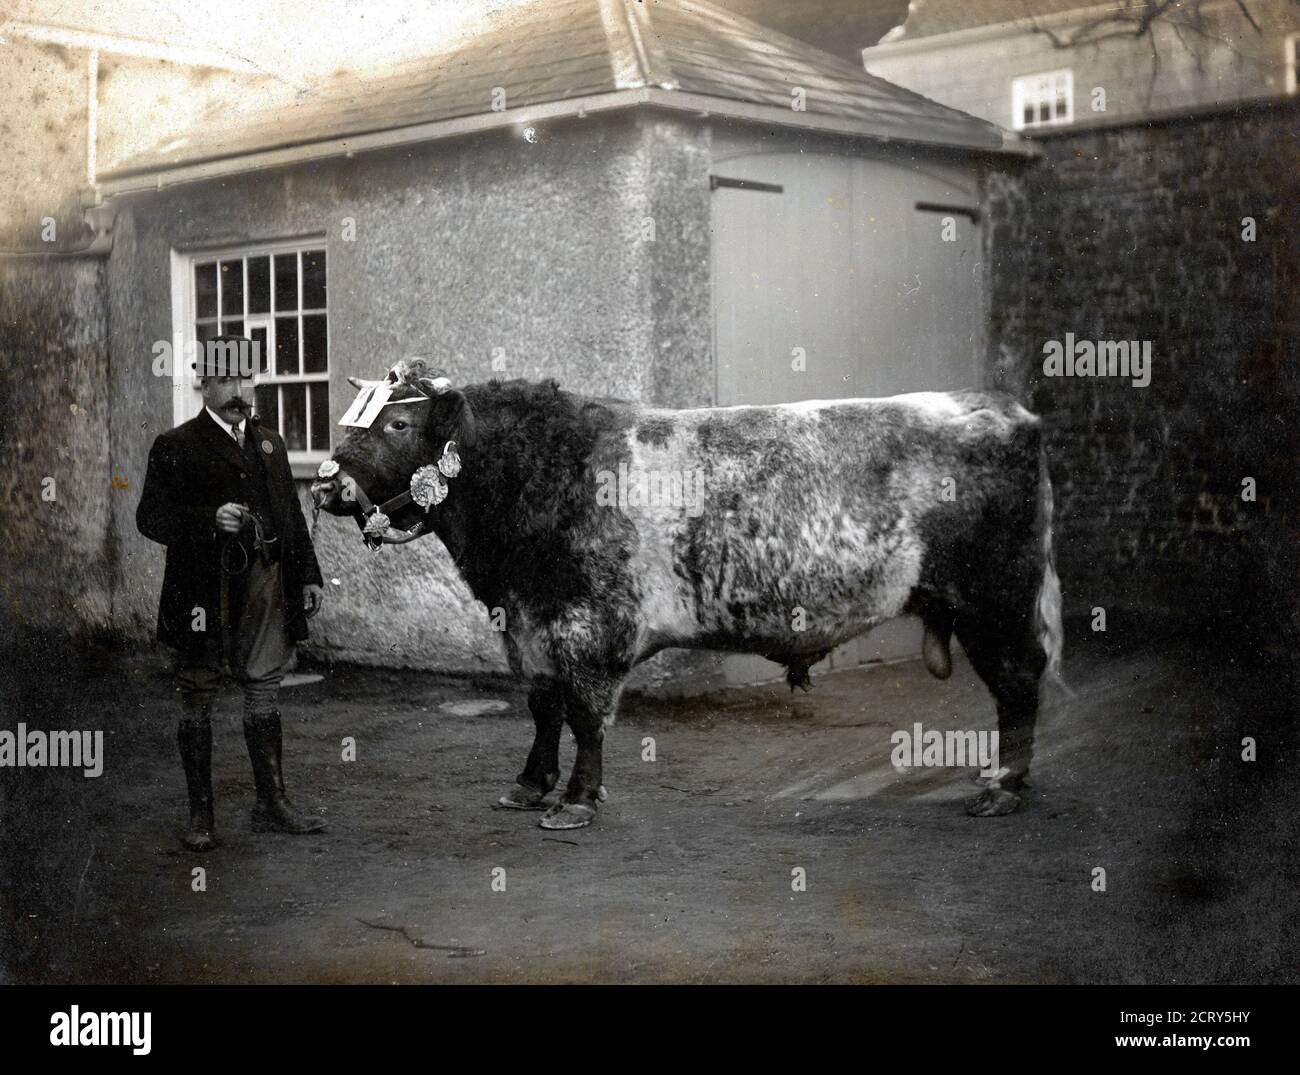 Un premio Herefordshire (o poss, Shorthorn) toro da circa 1910. Fotografo sconosciuto. Foto Stock